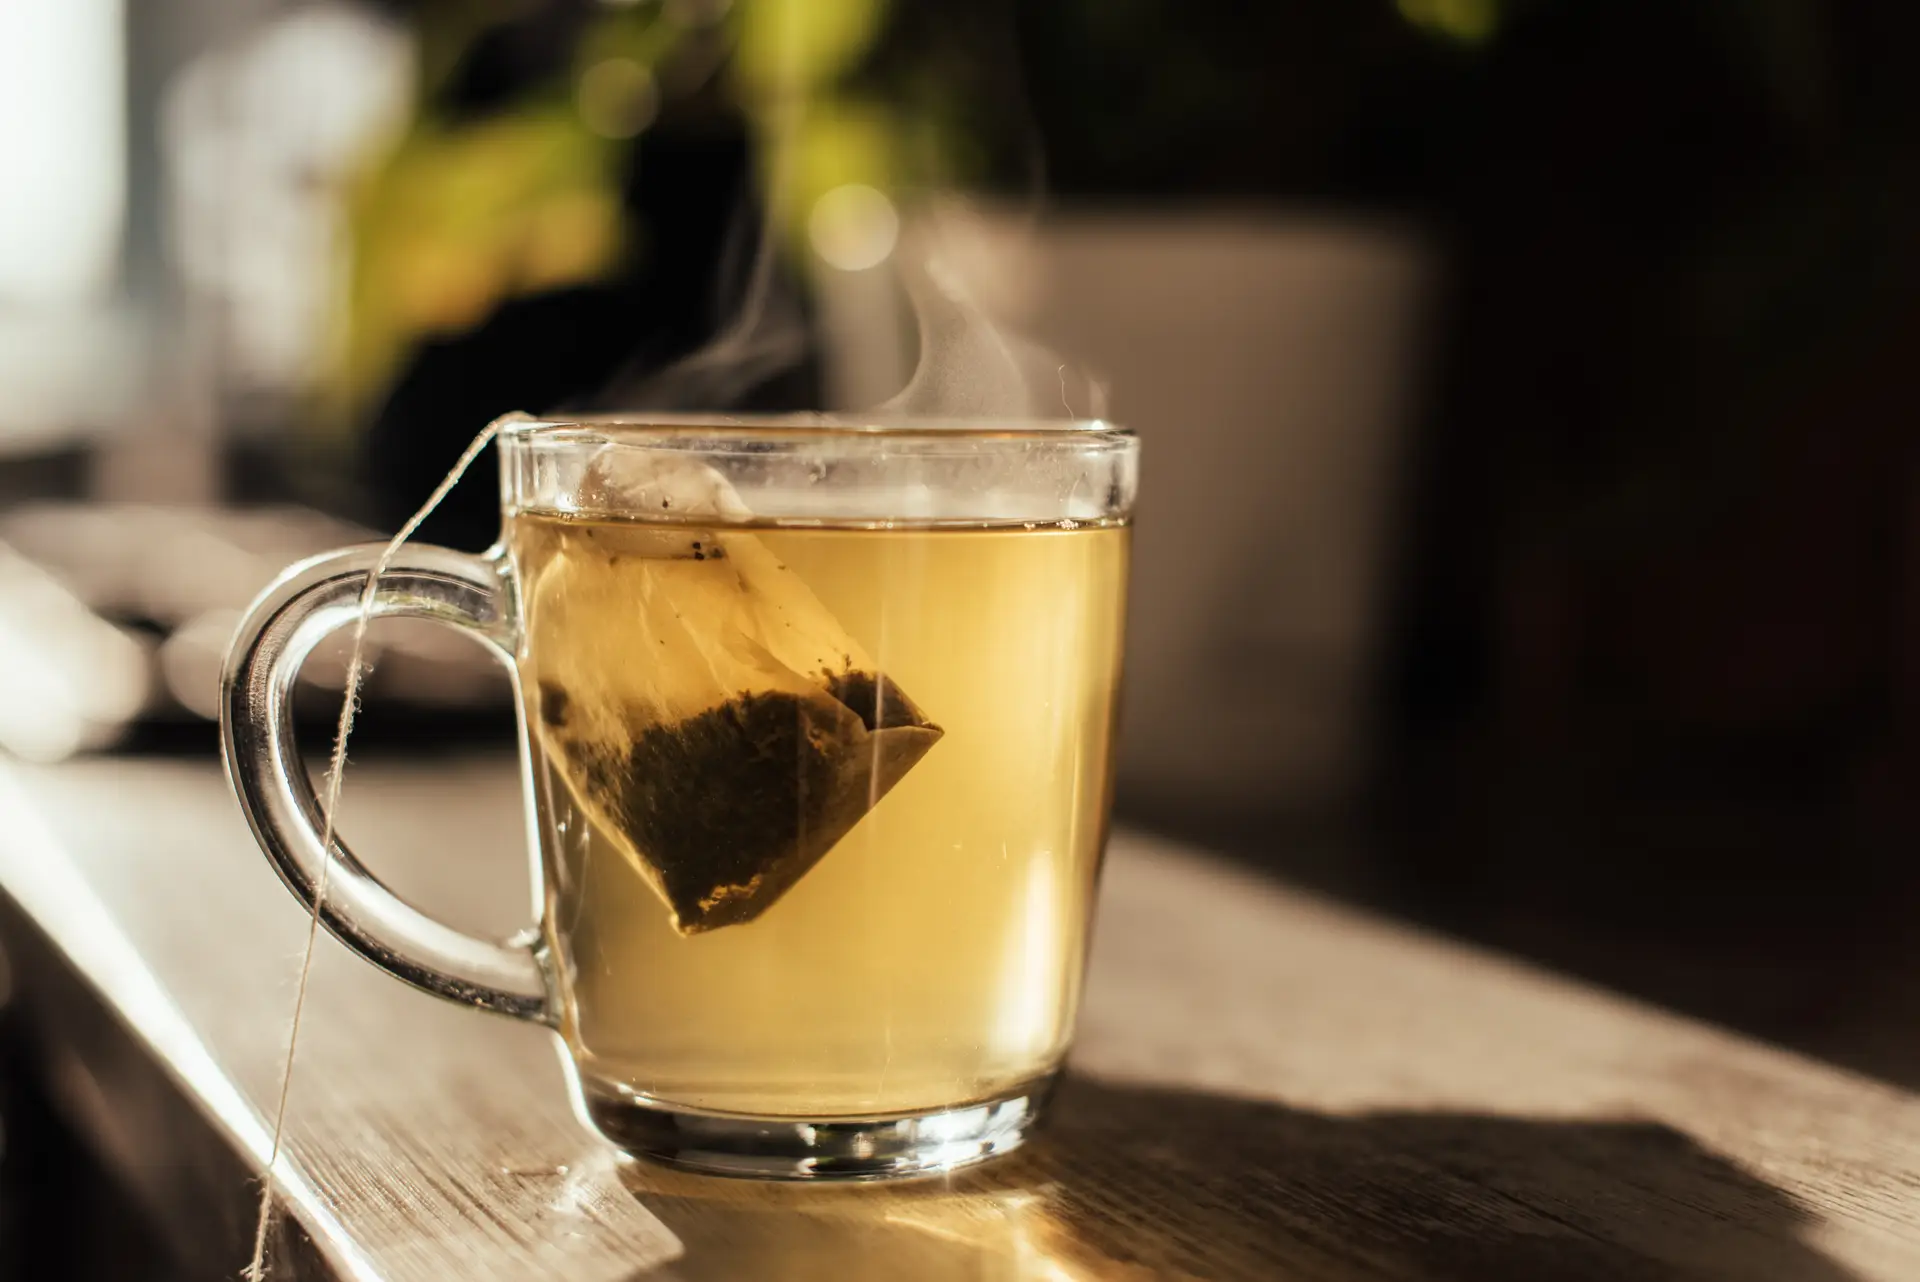 Consumidores de chá desfrutam de possíveis benefícios para a saúde, sugere estudo